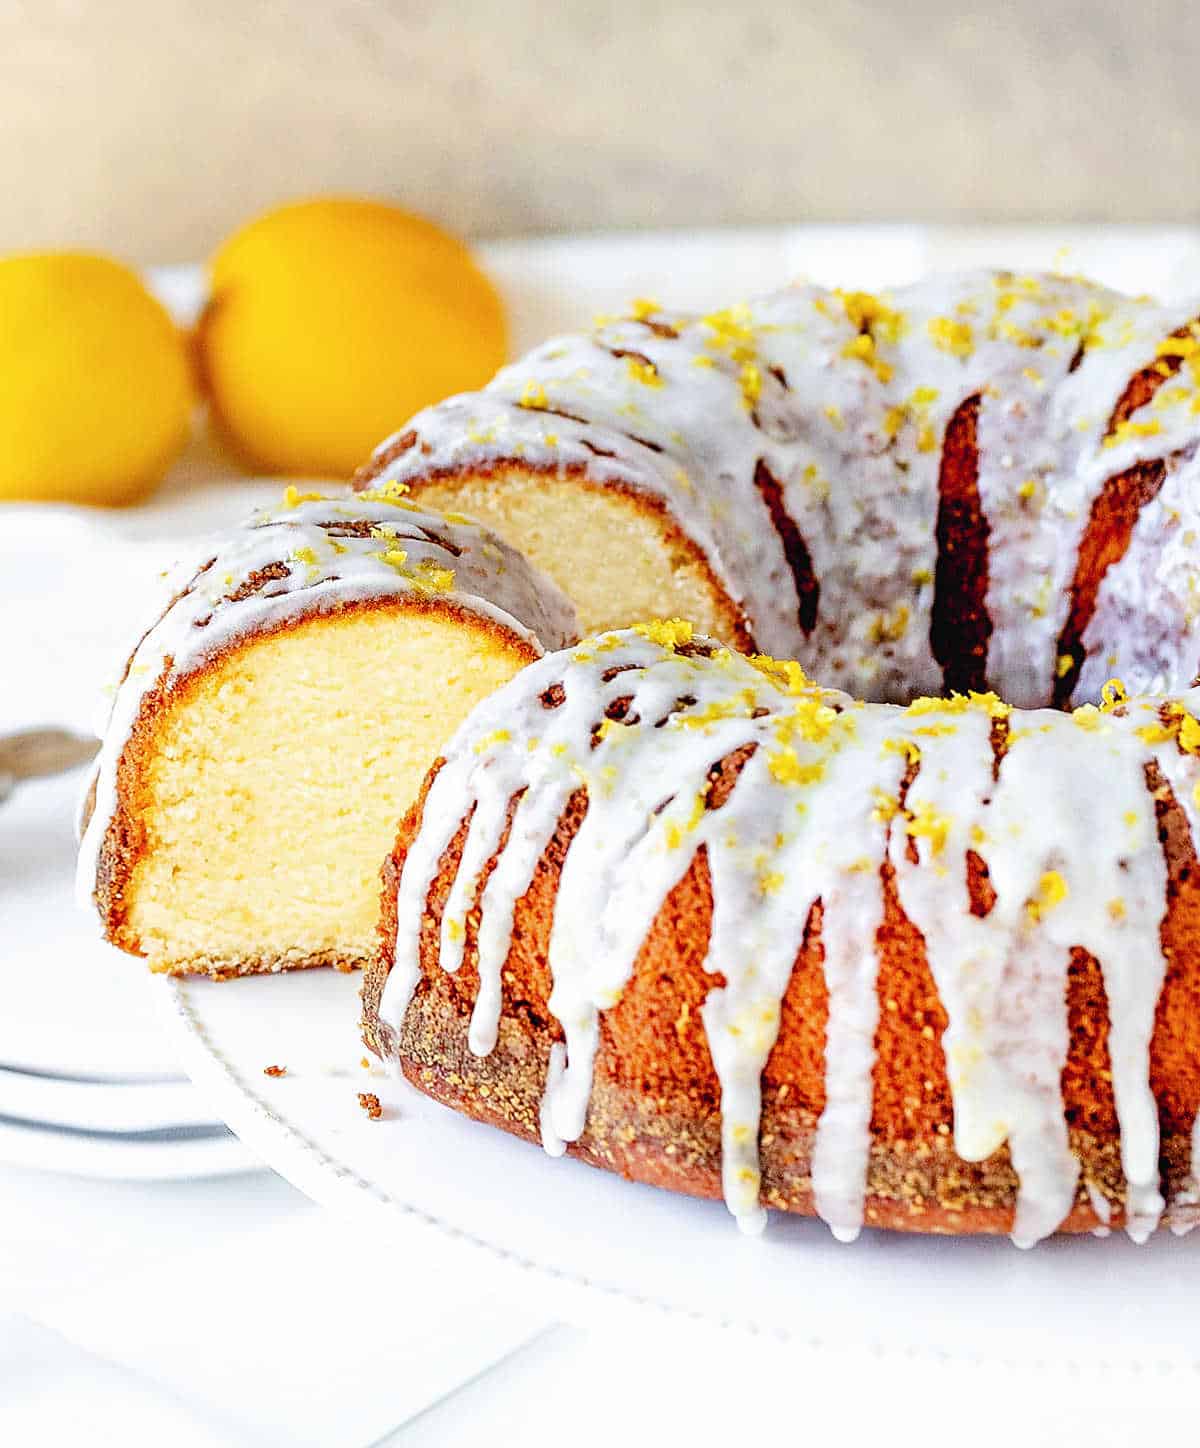 Glazed lemon bundt cake with cut slice on a white stand, whole lemons, white beige background.